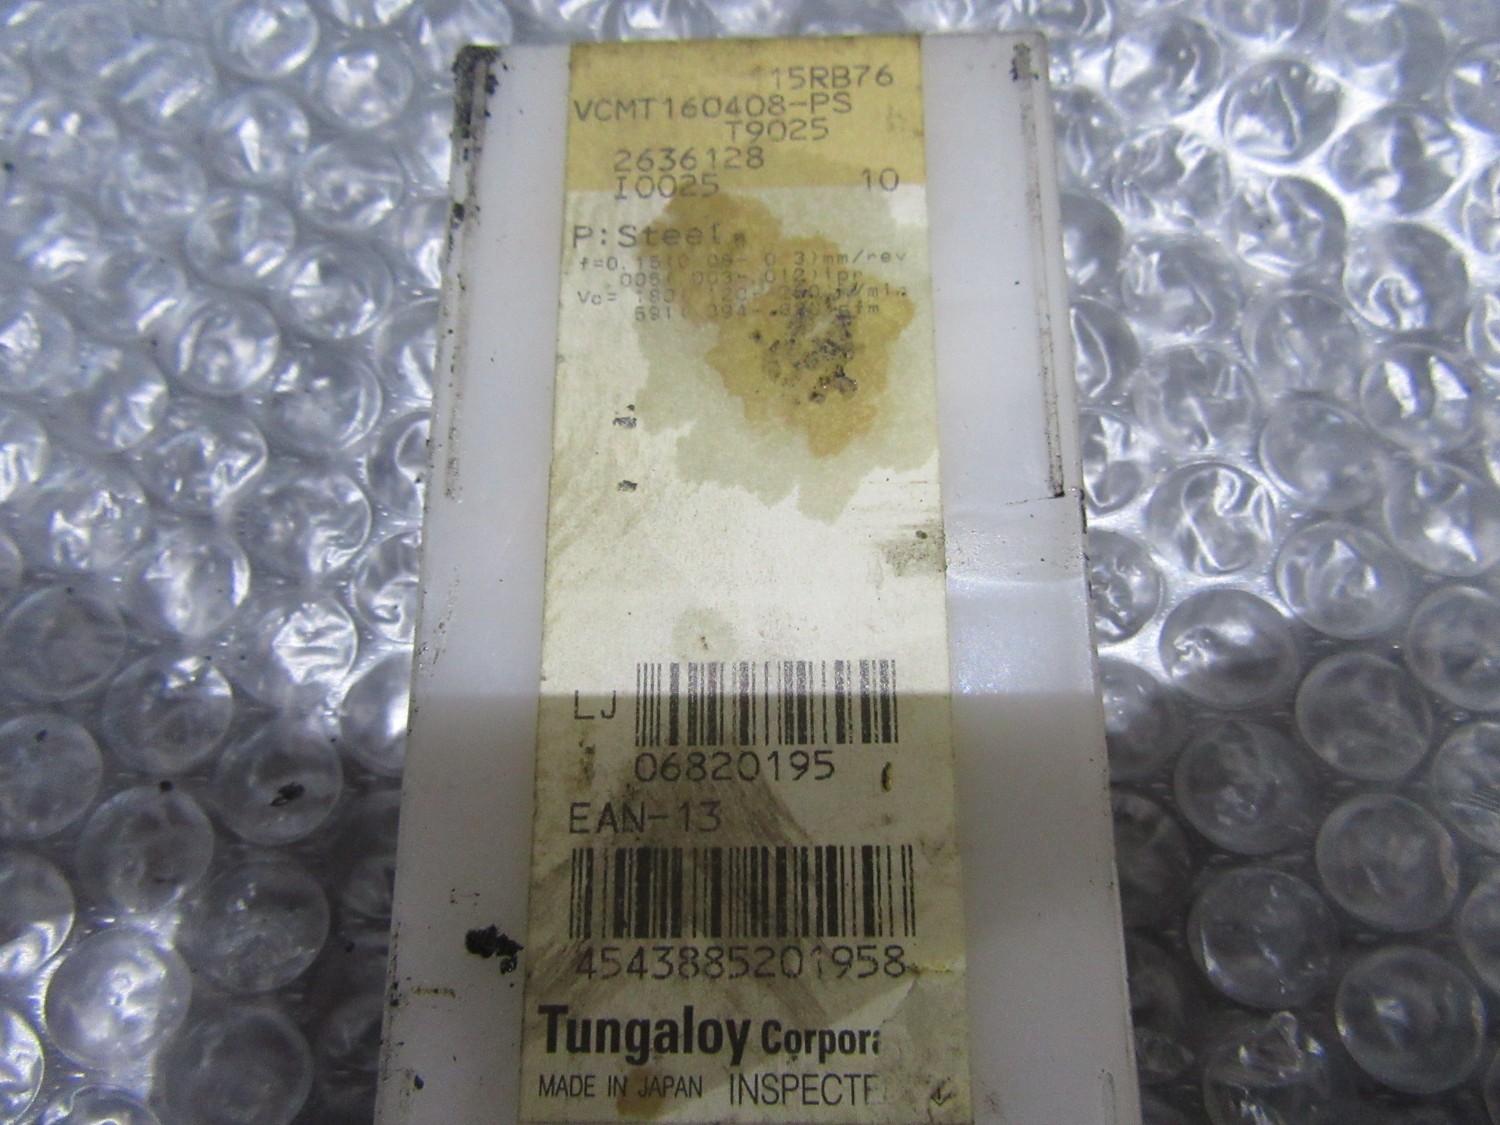 中古Cutting Exchange Chip 【チップ】VCMT332-PS(T9025)  Tungaloy